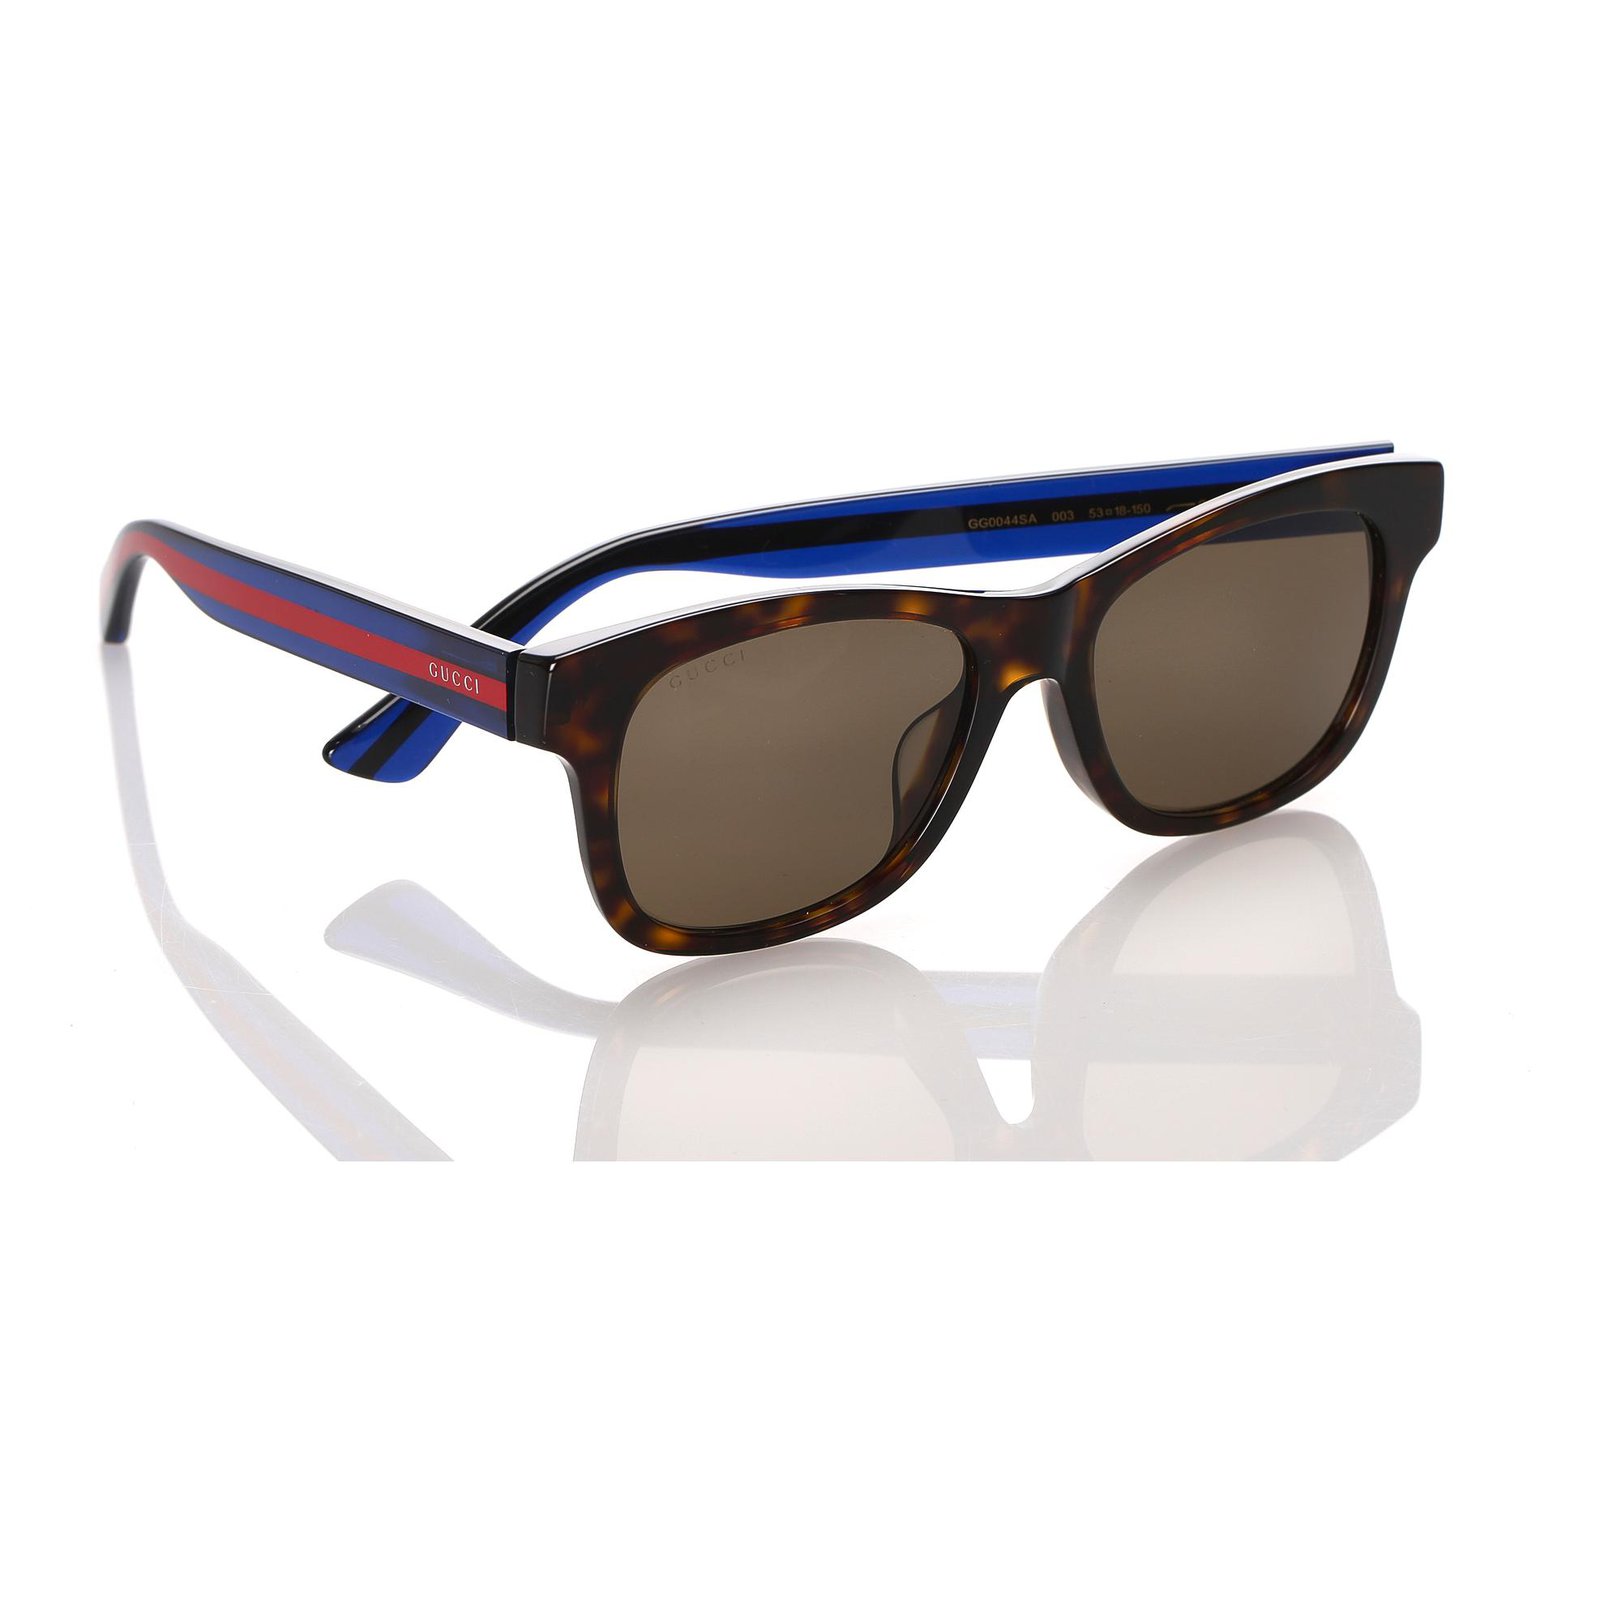 gucci wayfarer style sunglasses